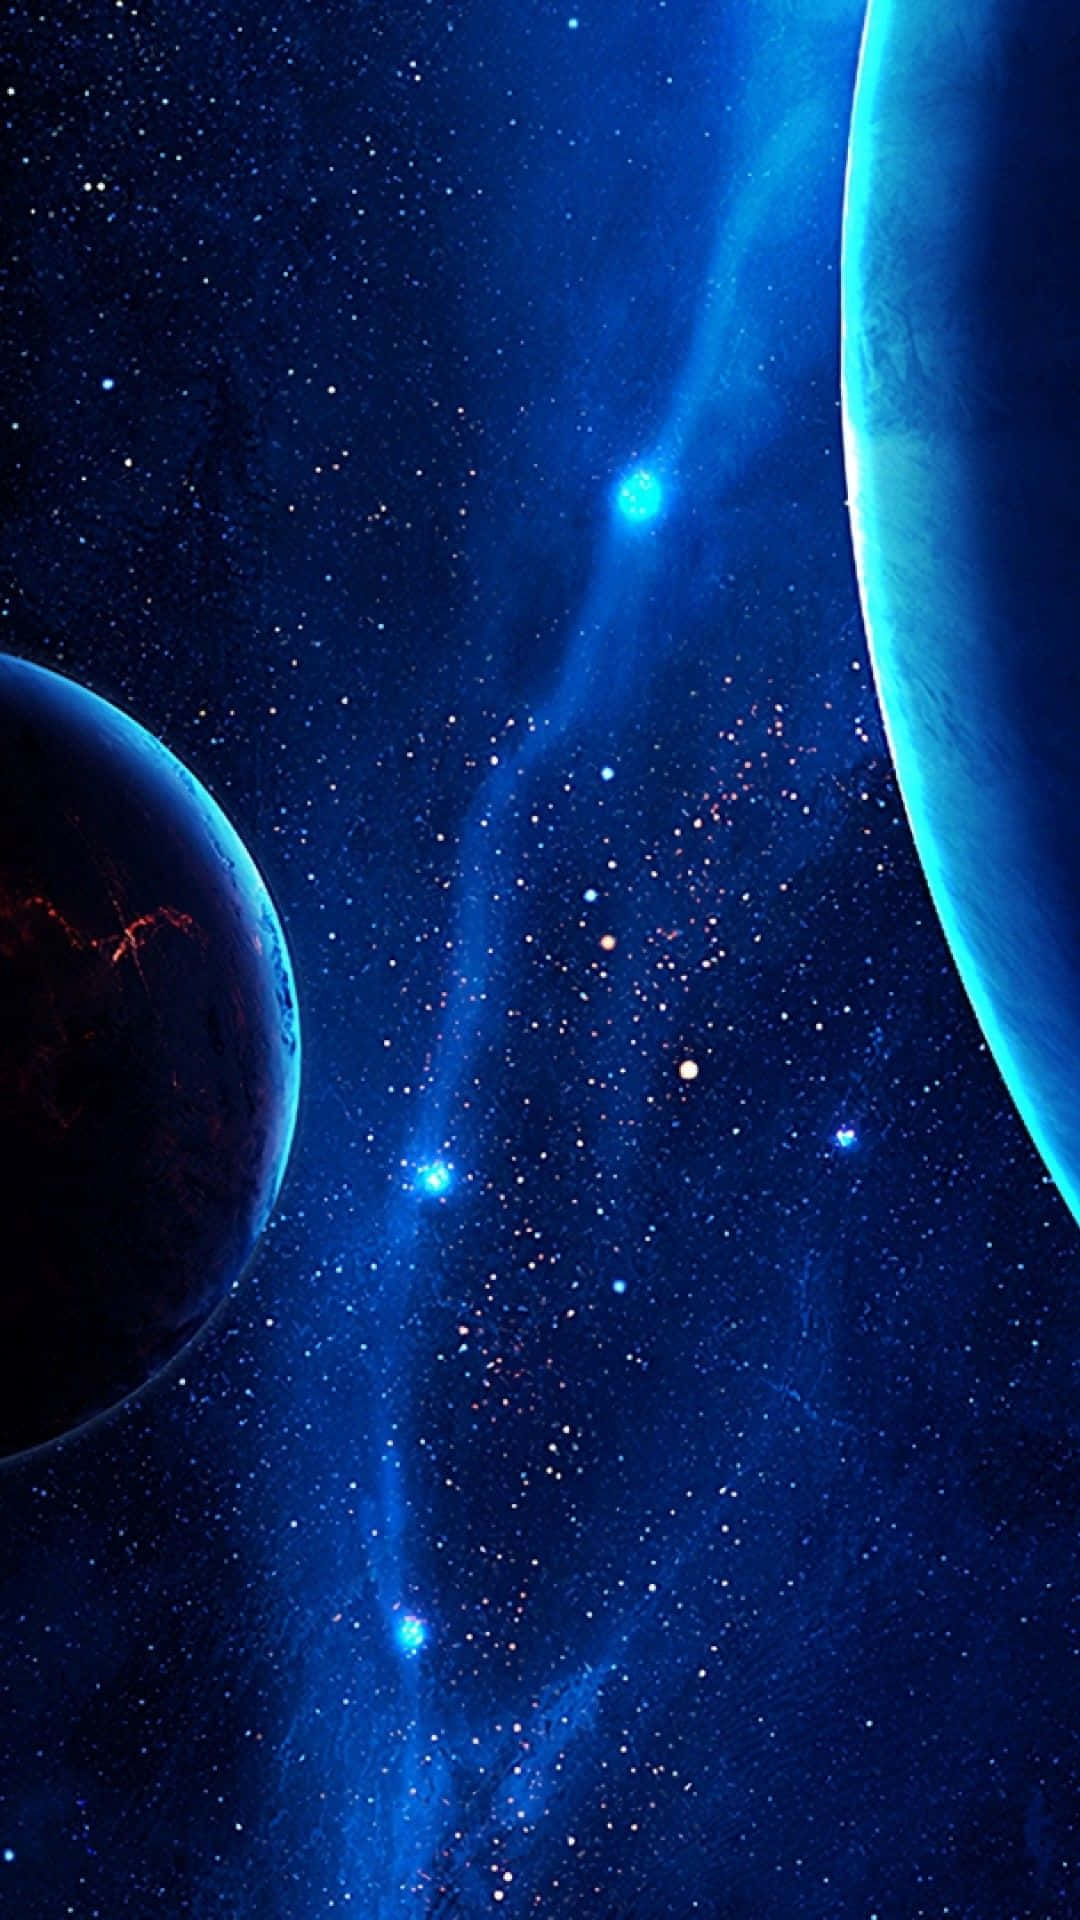 Stjärnorsom Skimrar I Den Blåa Universumsbakgrunden På En Iphone. Wallpaper